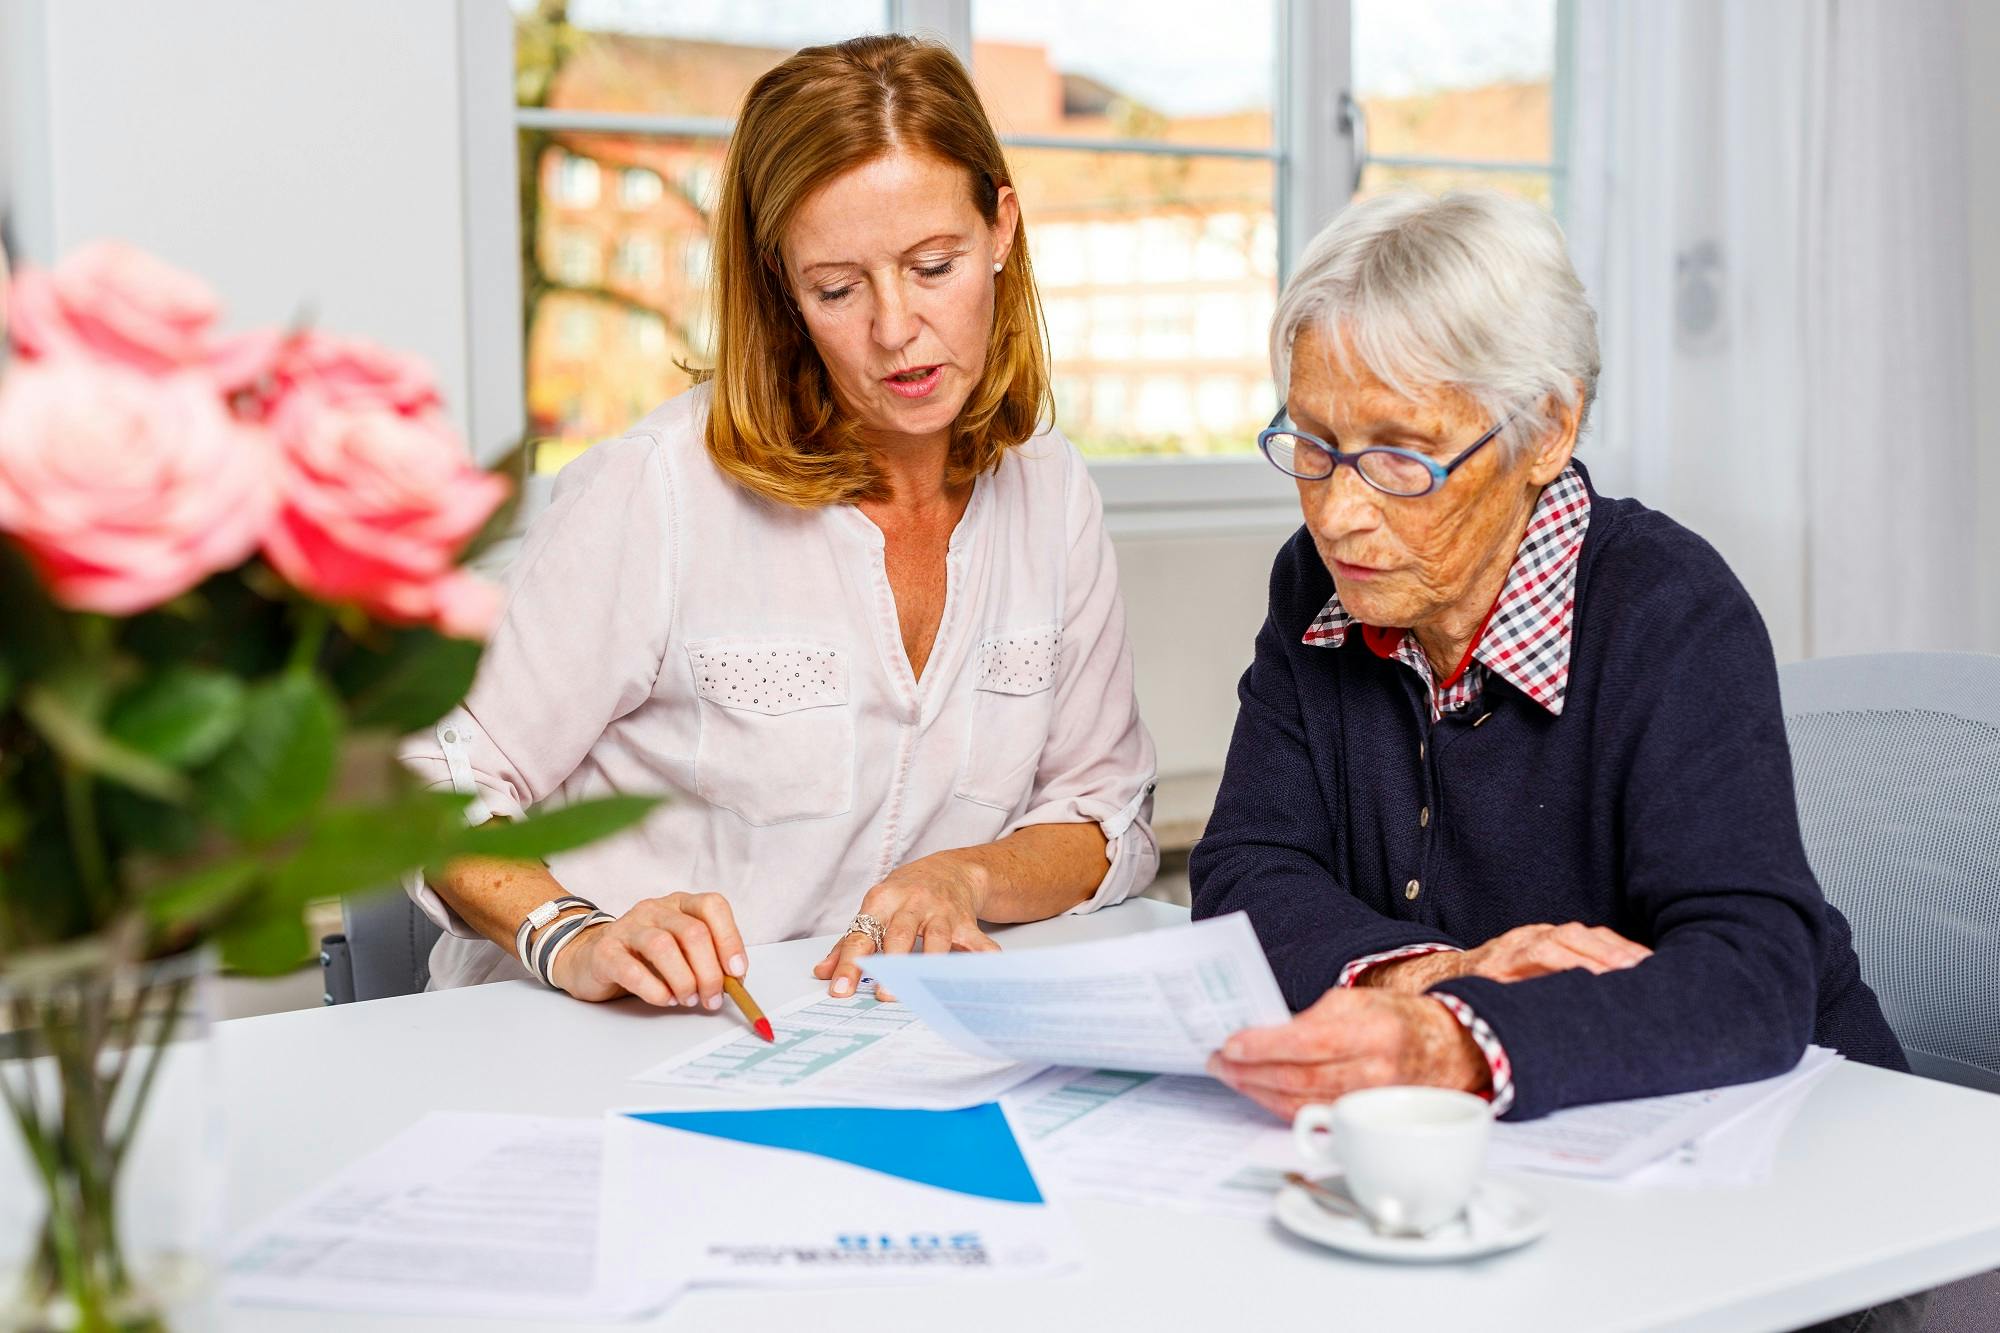 Jüngere Frau hilft älterer Dame bei der Dokumentenprüfung am Tisch mit Unterlagen und Kaffeetasse.